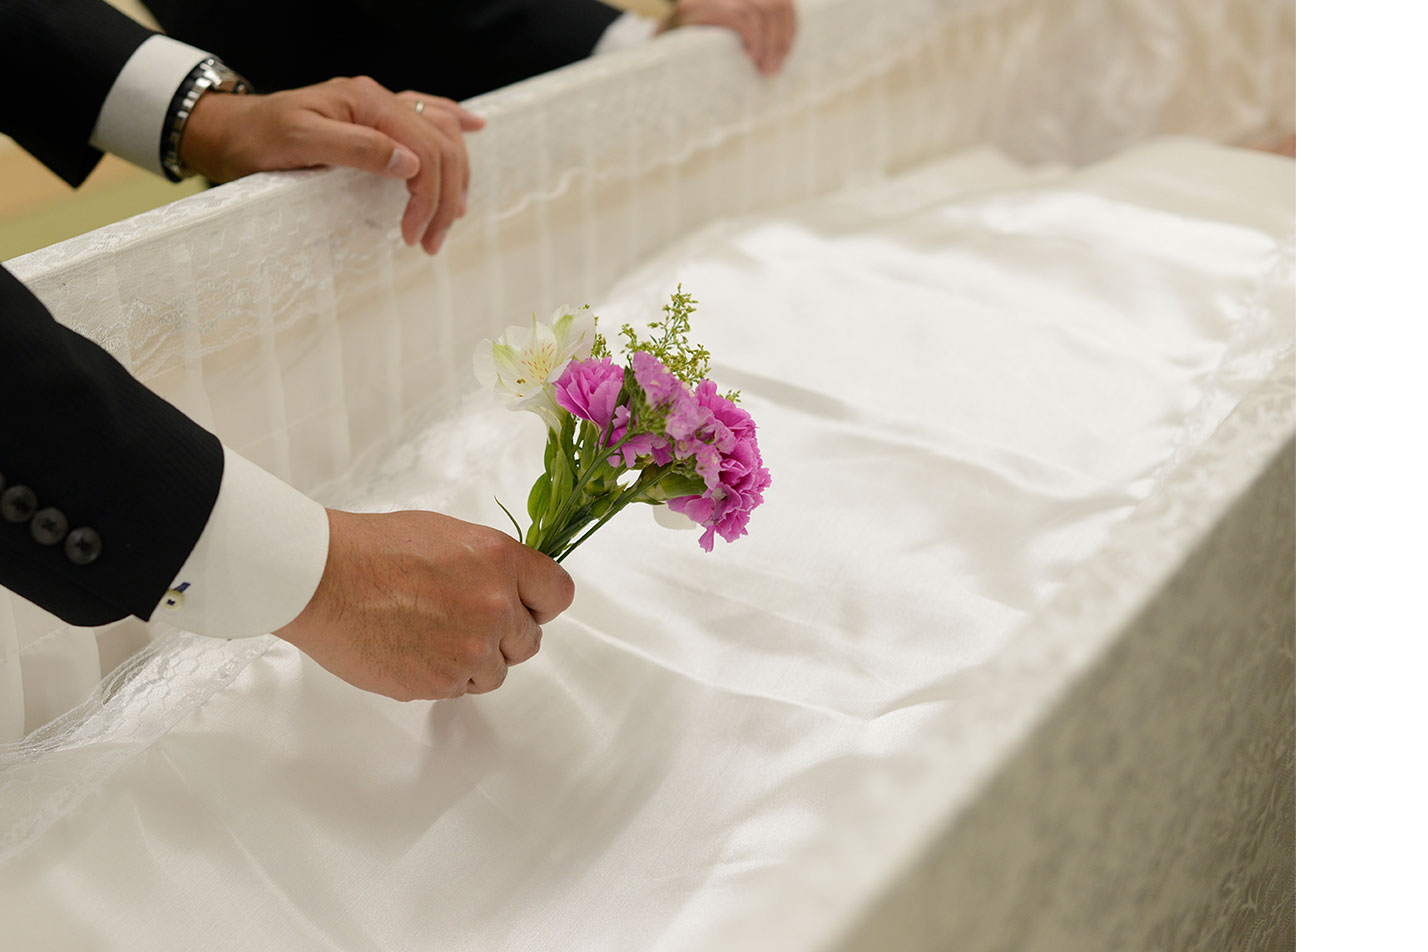  石巻市ではじめての葬儀を行う喪主様へのイメージ画像